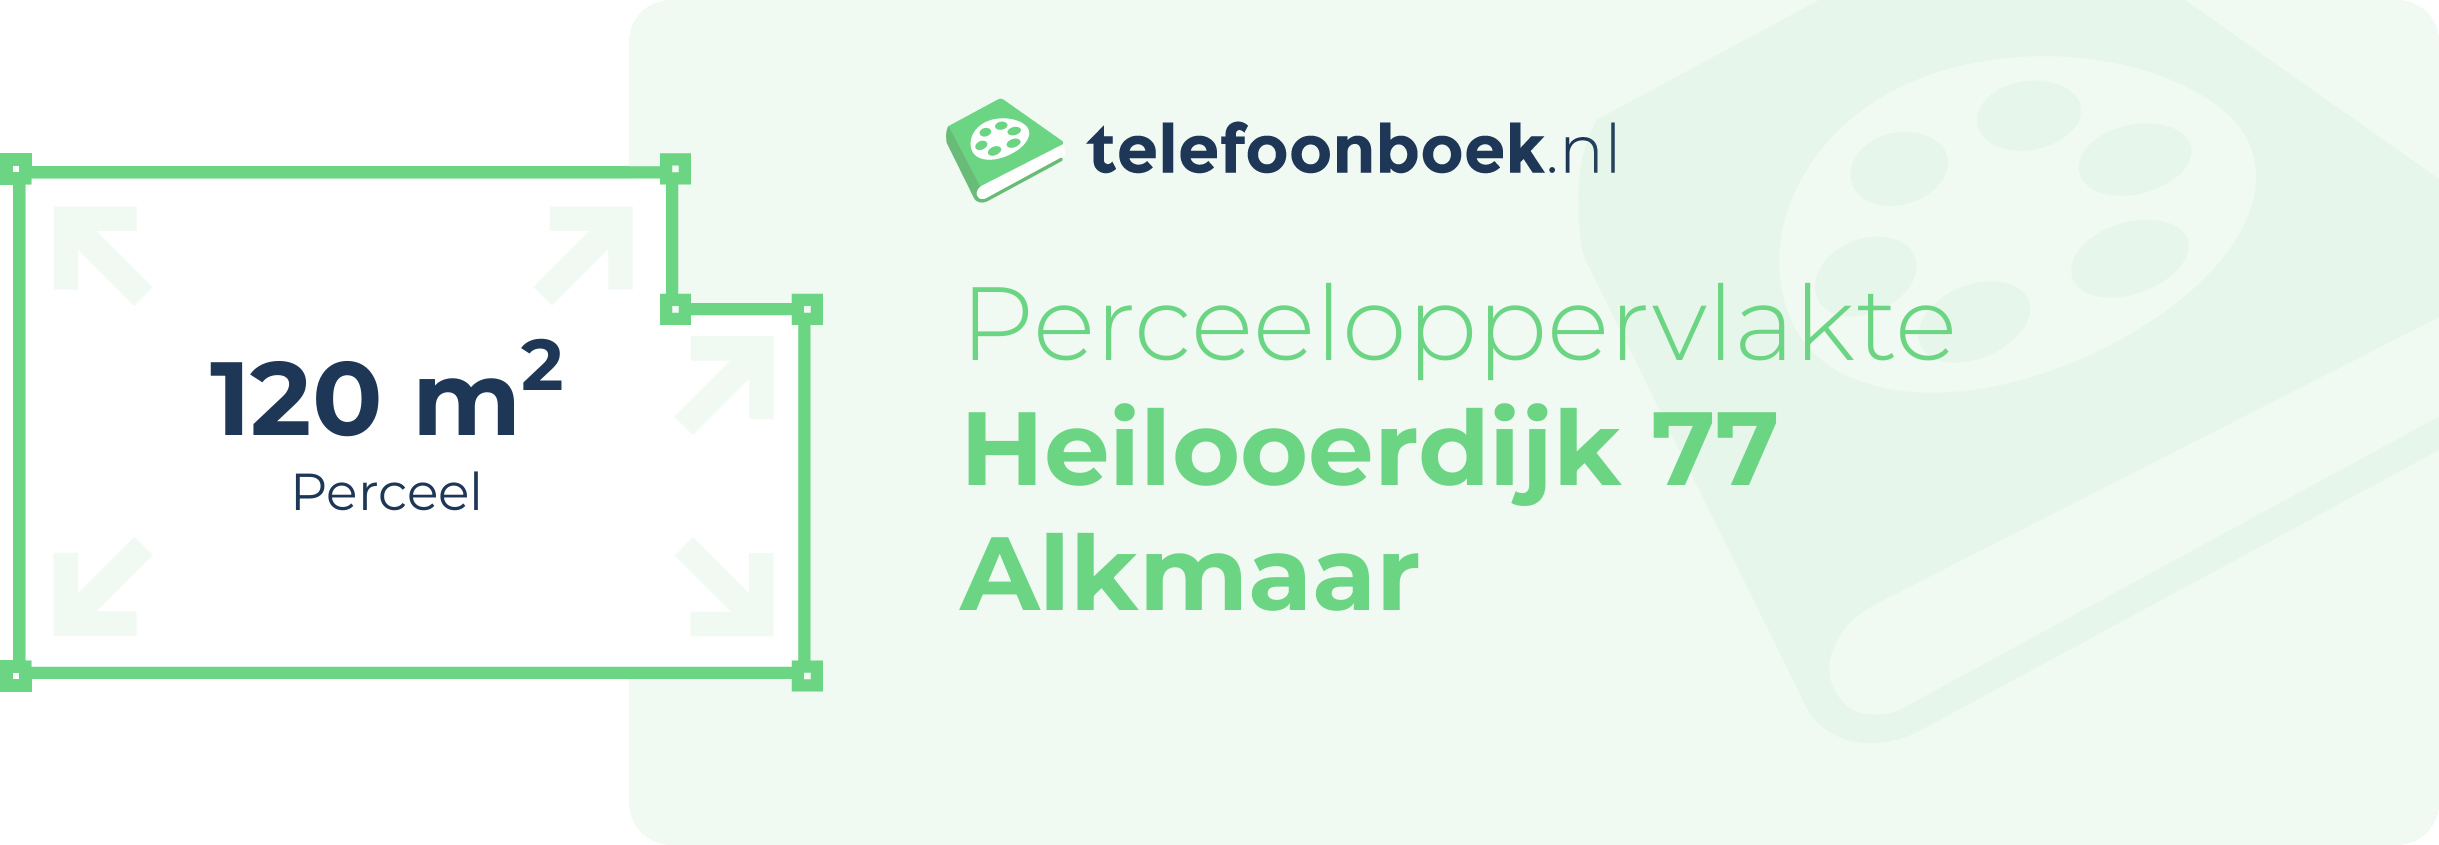 Perceeloppervlakte Heilooerdijk 77 Alkmaar